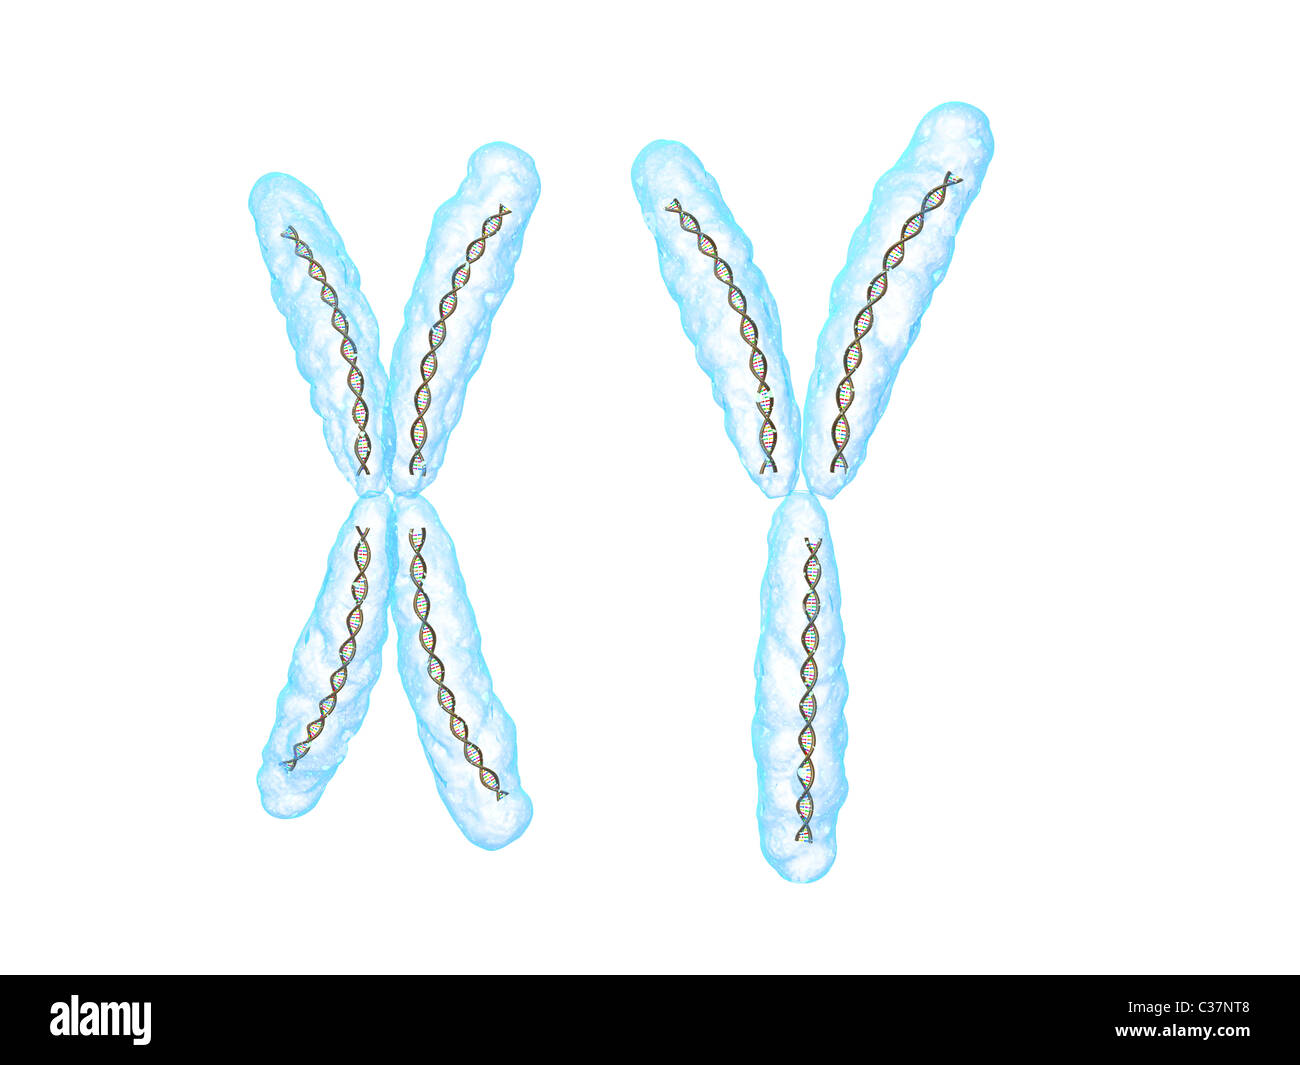 X - Chromosom, y - Chromosom Stockfoto